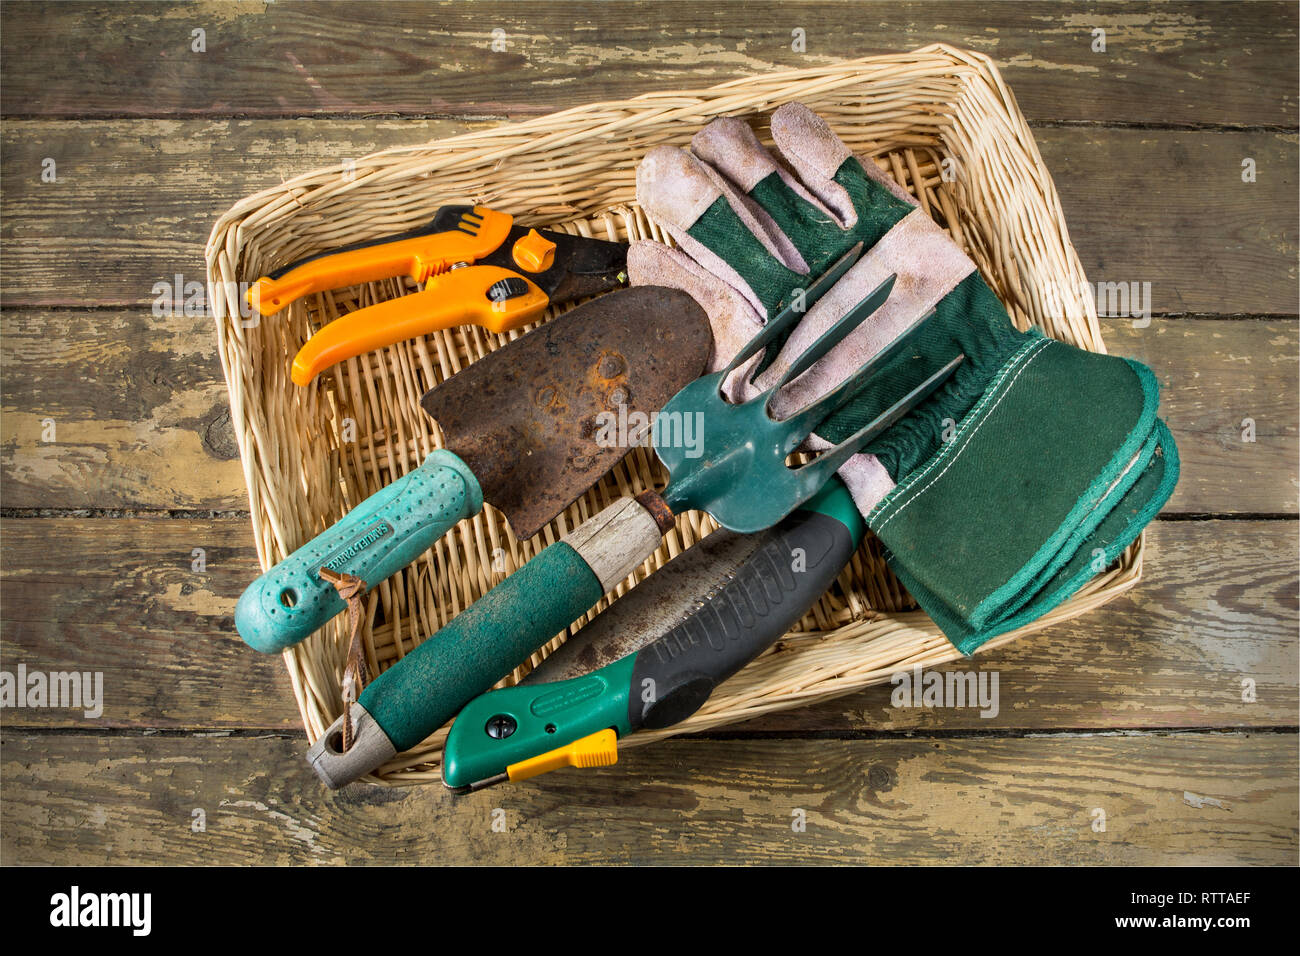 Un panier de bien utilisé d'habitude des outils à main de jardinage Banque D'Images